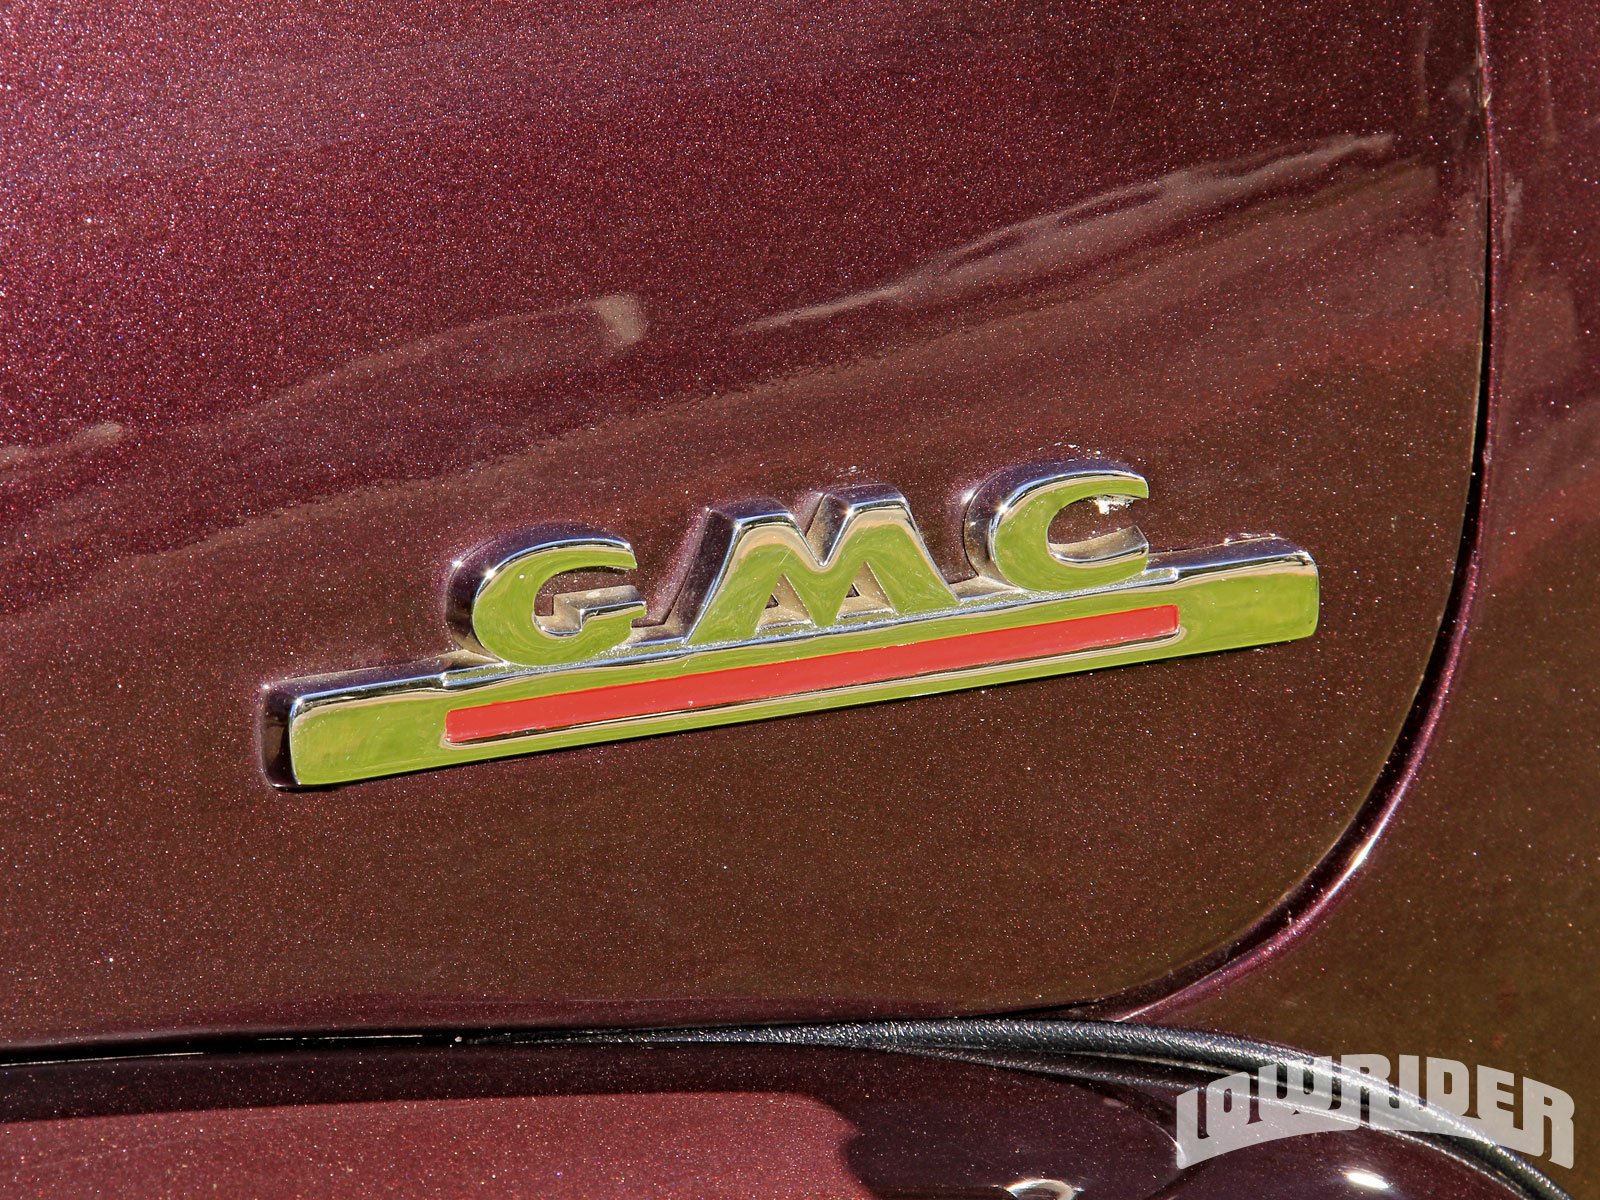 1952, Gmc, 1500, Custom, Pickup, Tuning, Hot, Rods, Rod, Gangsta, Lowrider, Truck Wallpaper